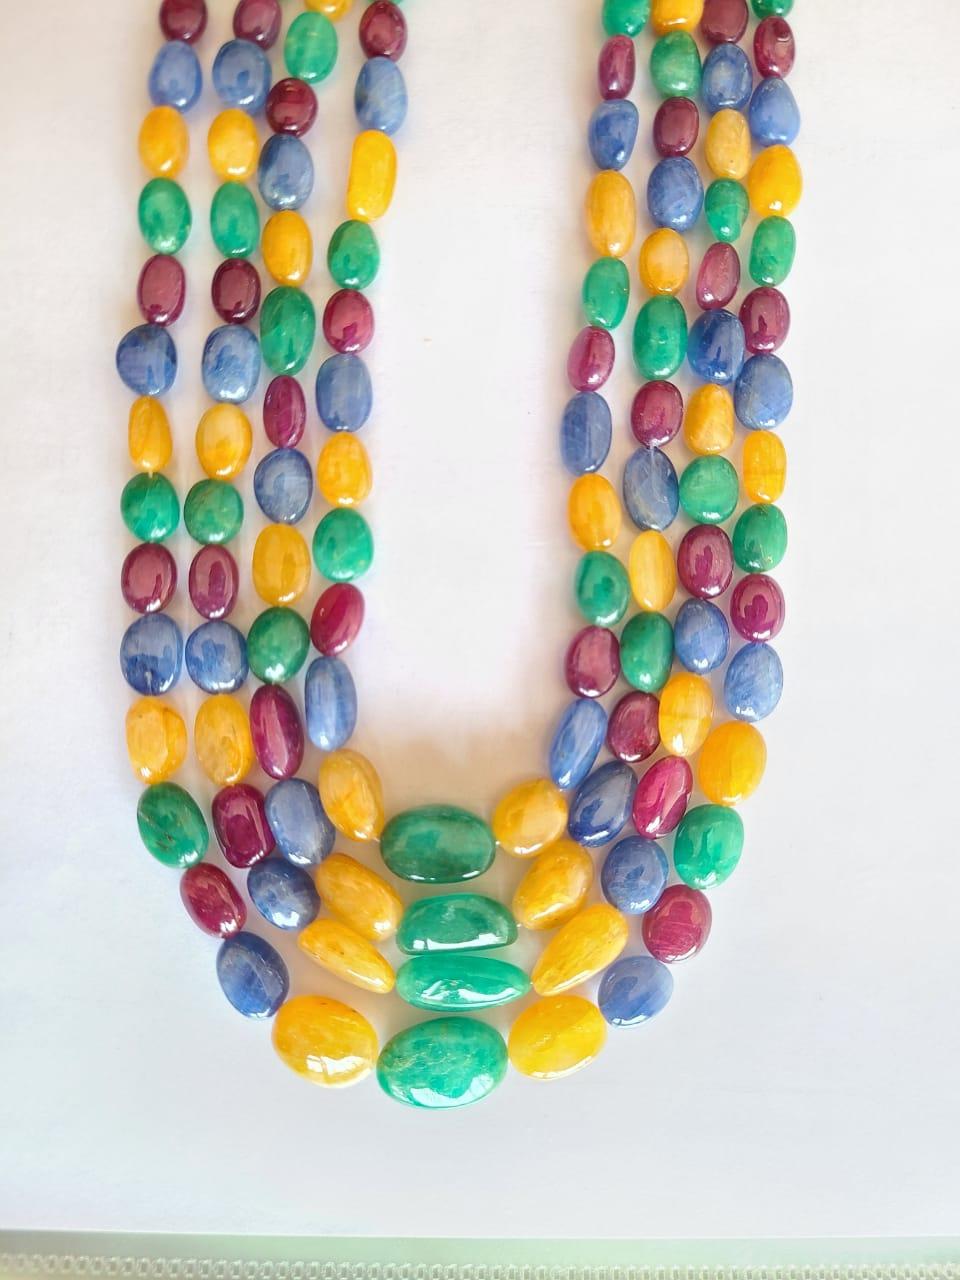 Eine einzigartige, mehrsträngige Perlenkette aus natürlichen blauen Saphiren, Smaragden, Rubinen und gelben Saphiren. Die blauen und gelben Saphire stammen aus Burma und sind völlig natürlich und unbehandelt. Die Smaragde sind ebenfalls völlig